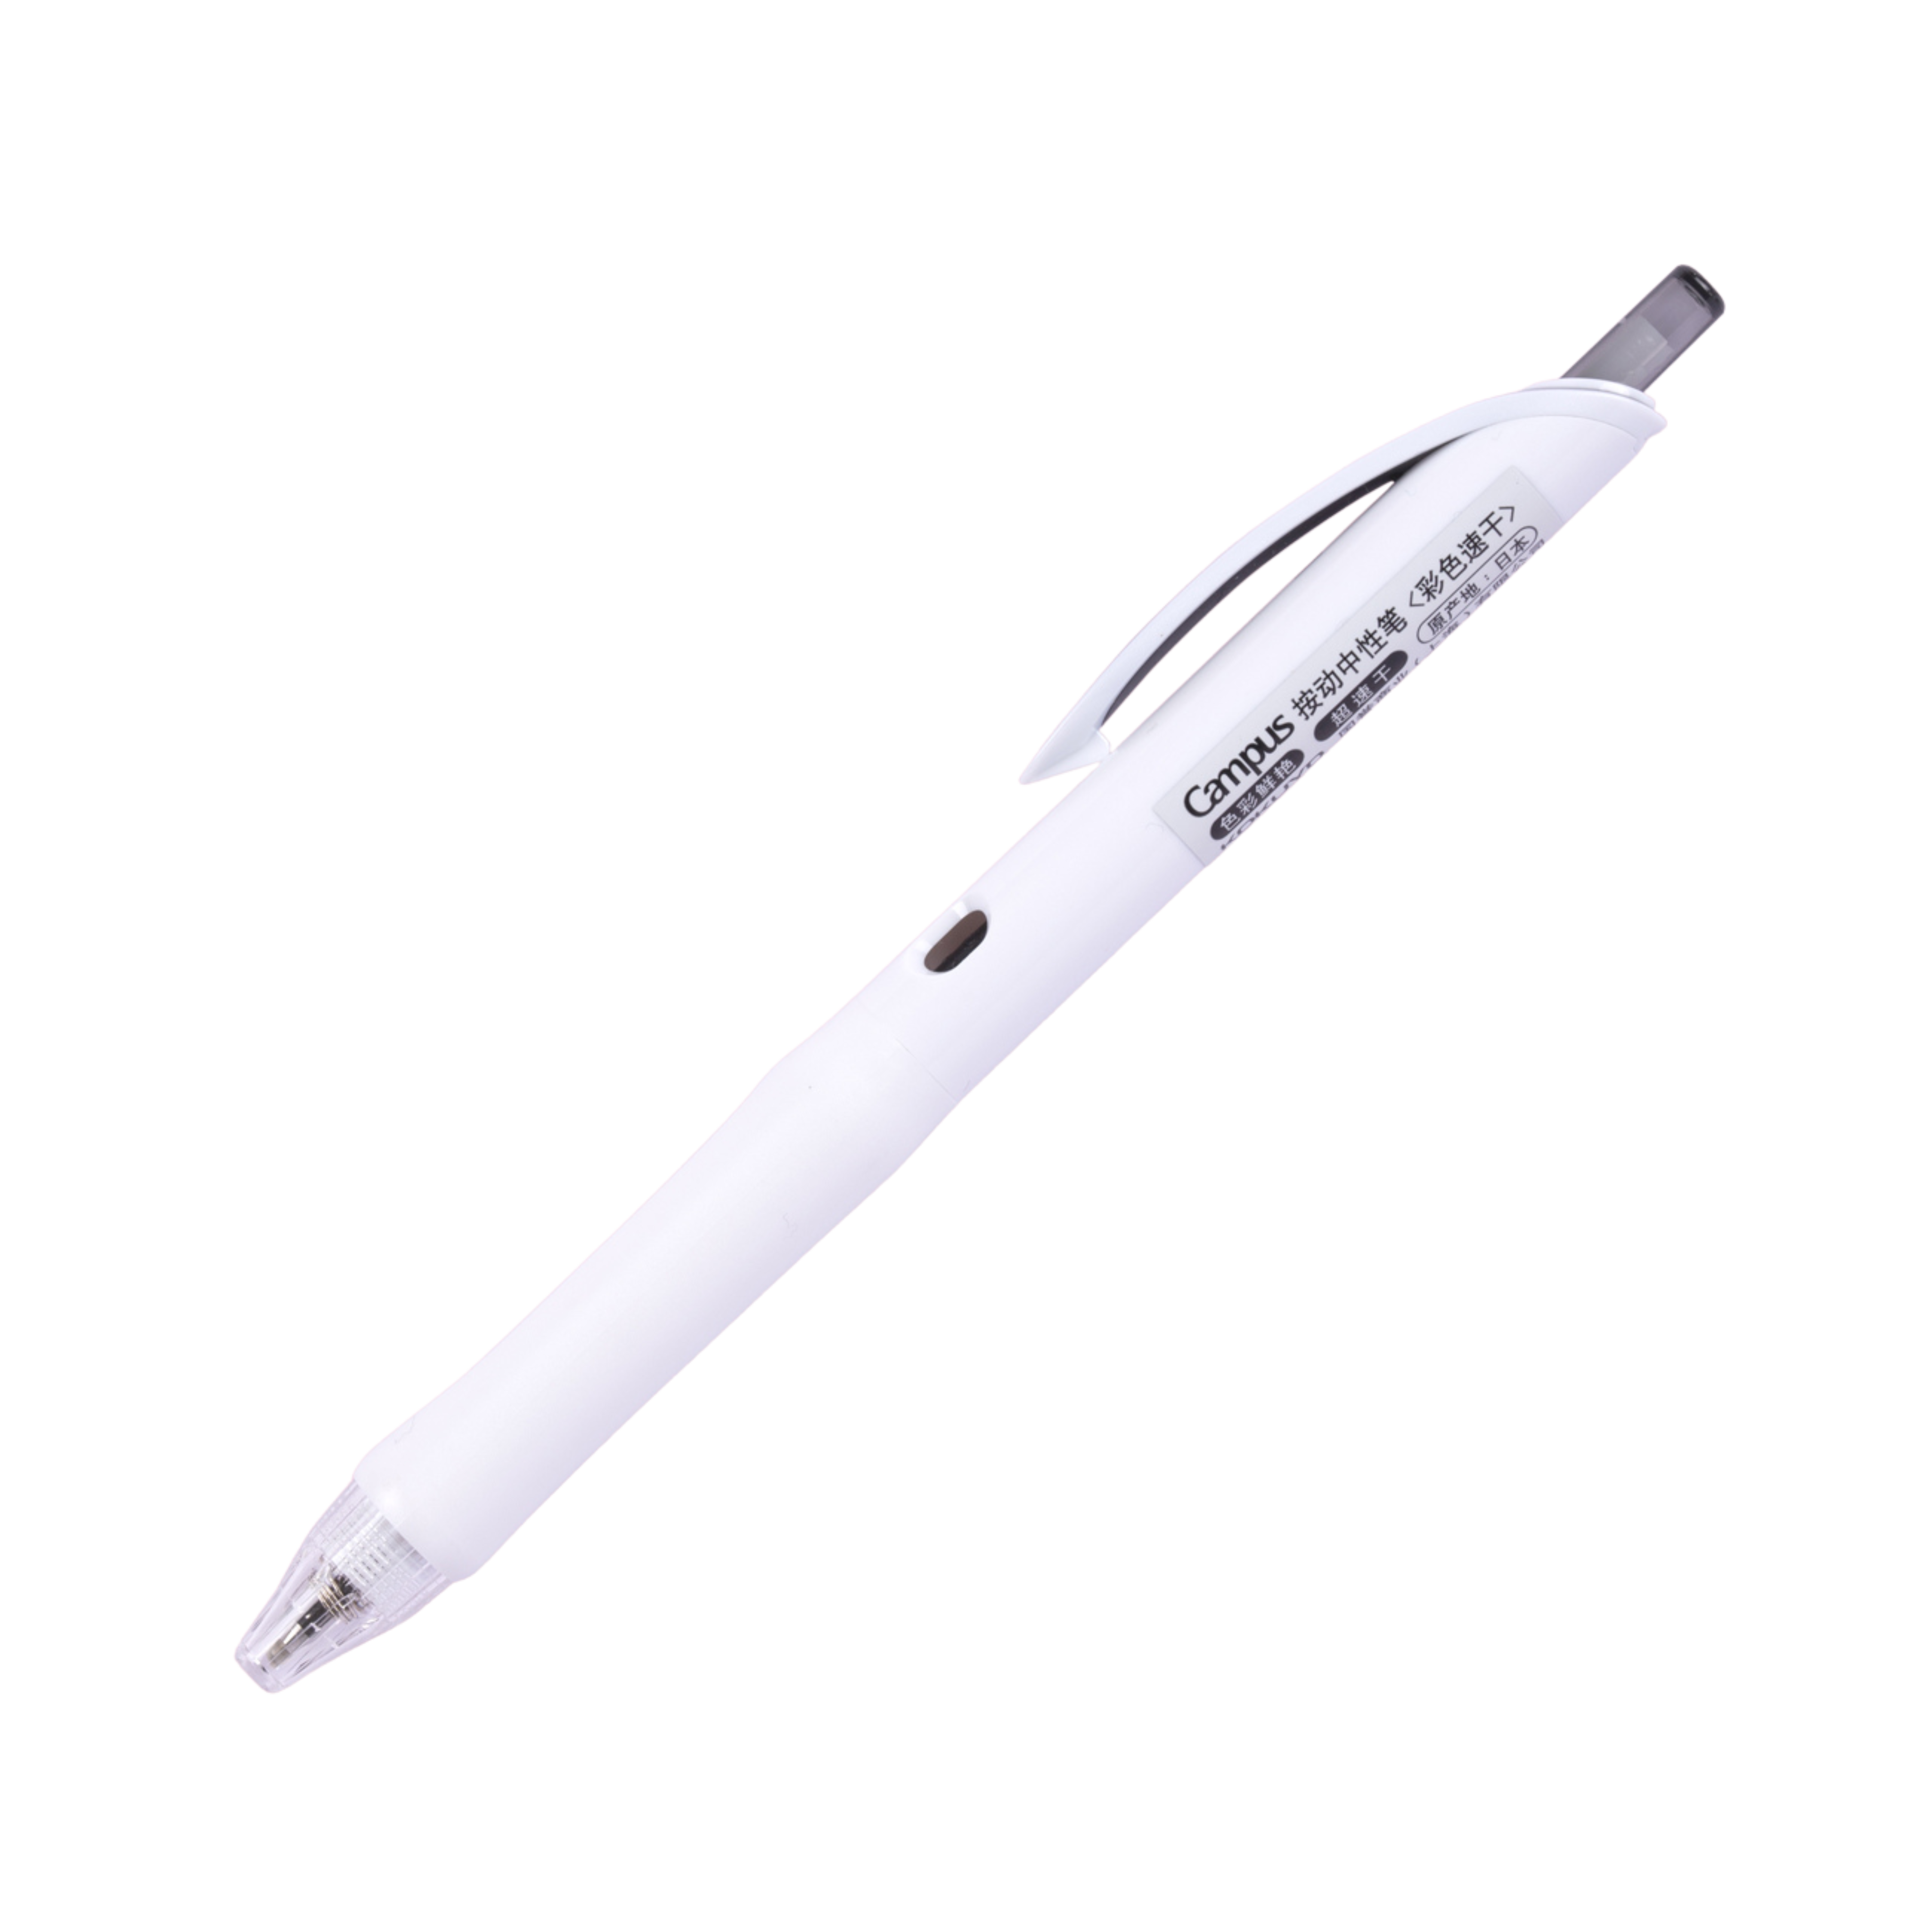 Kokuyo Campus viviDRY Retractable Gel Pen - 0.5 mm - Black